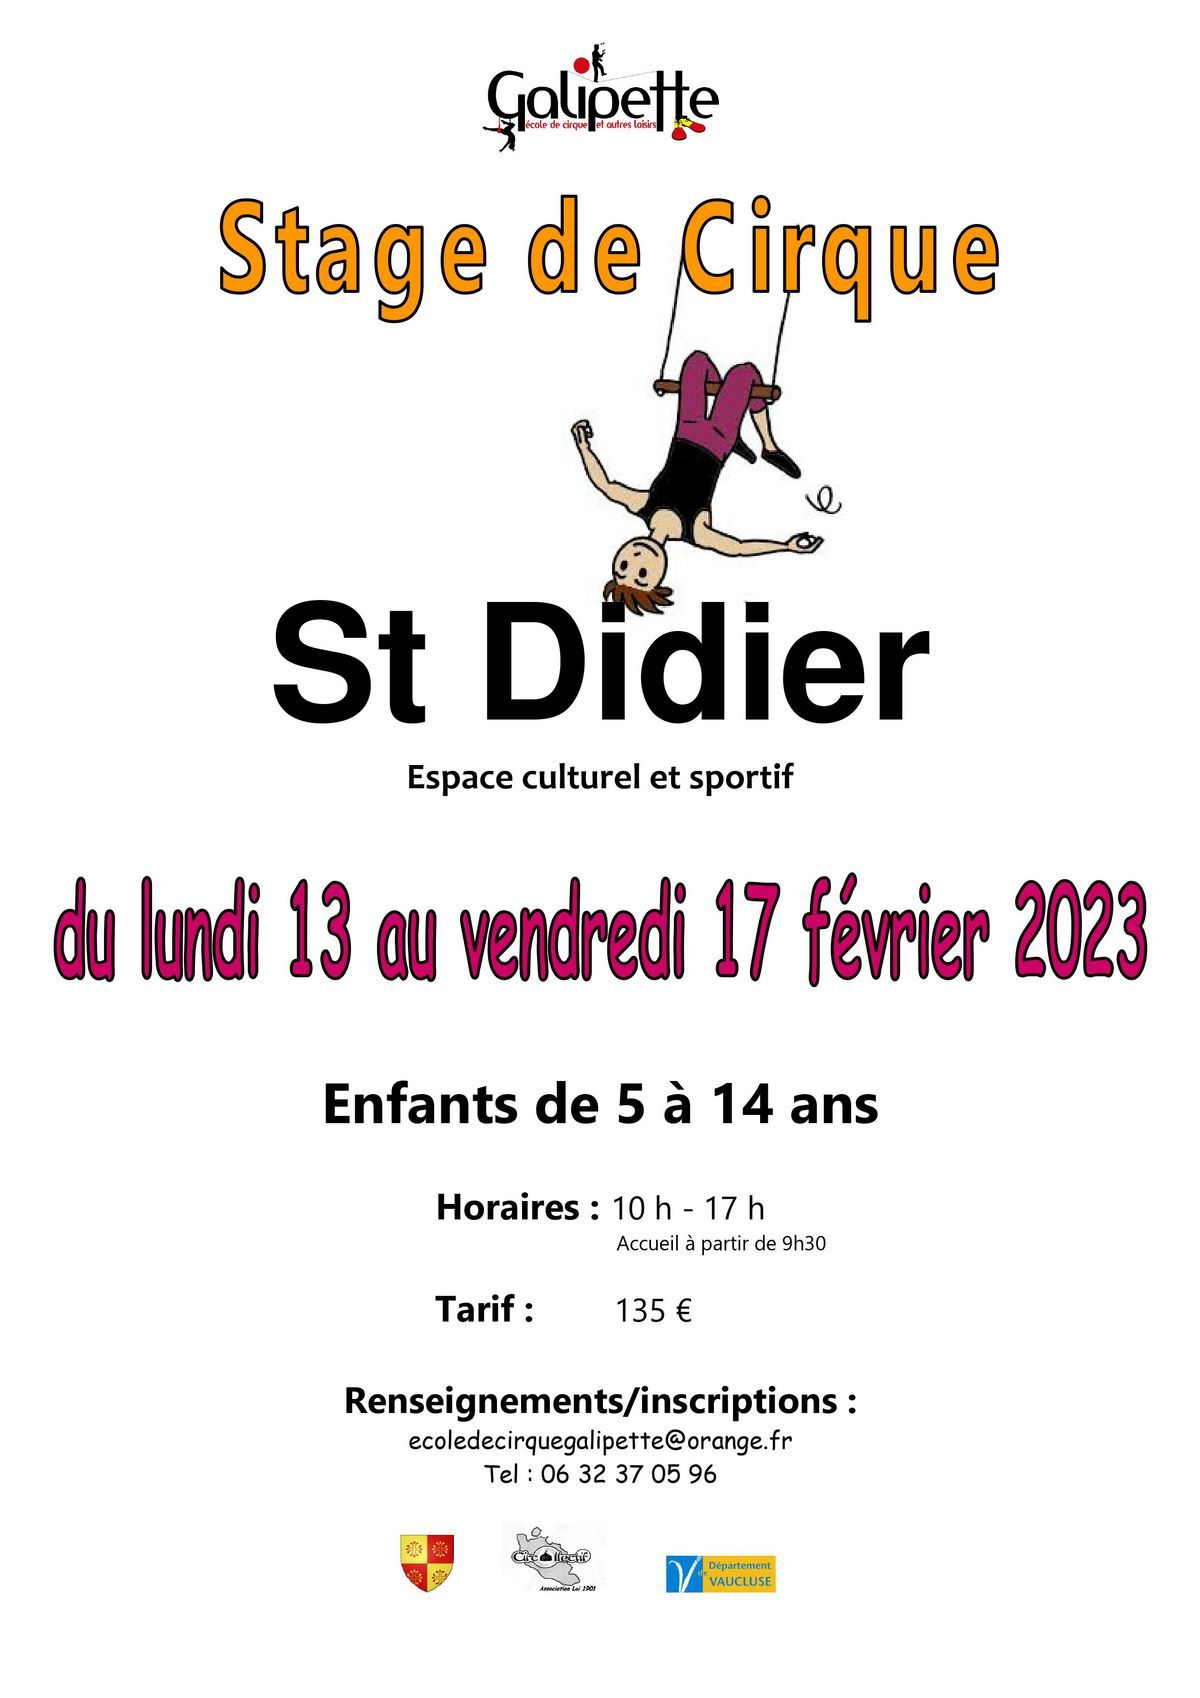 Stage de cirque Galipette - Saint-Didier 